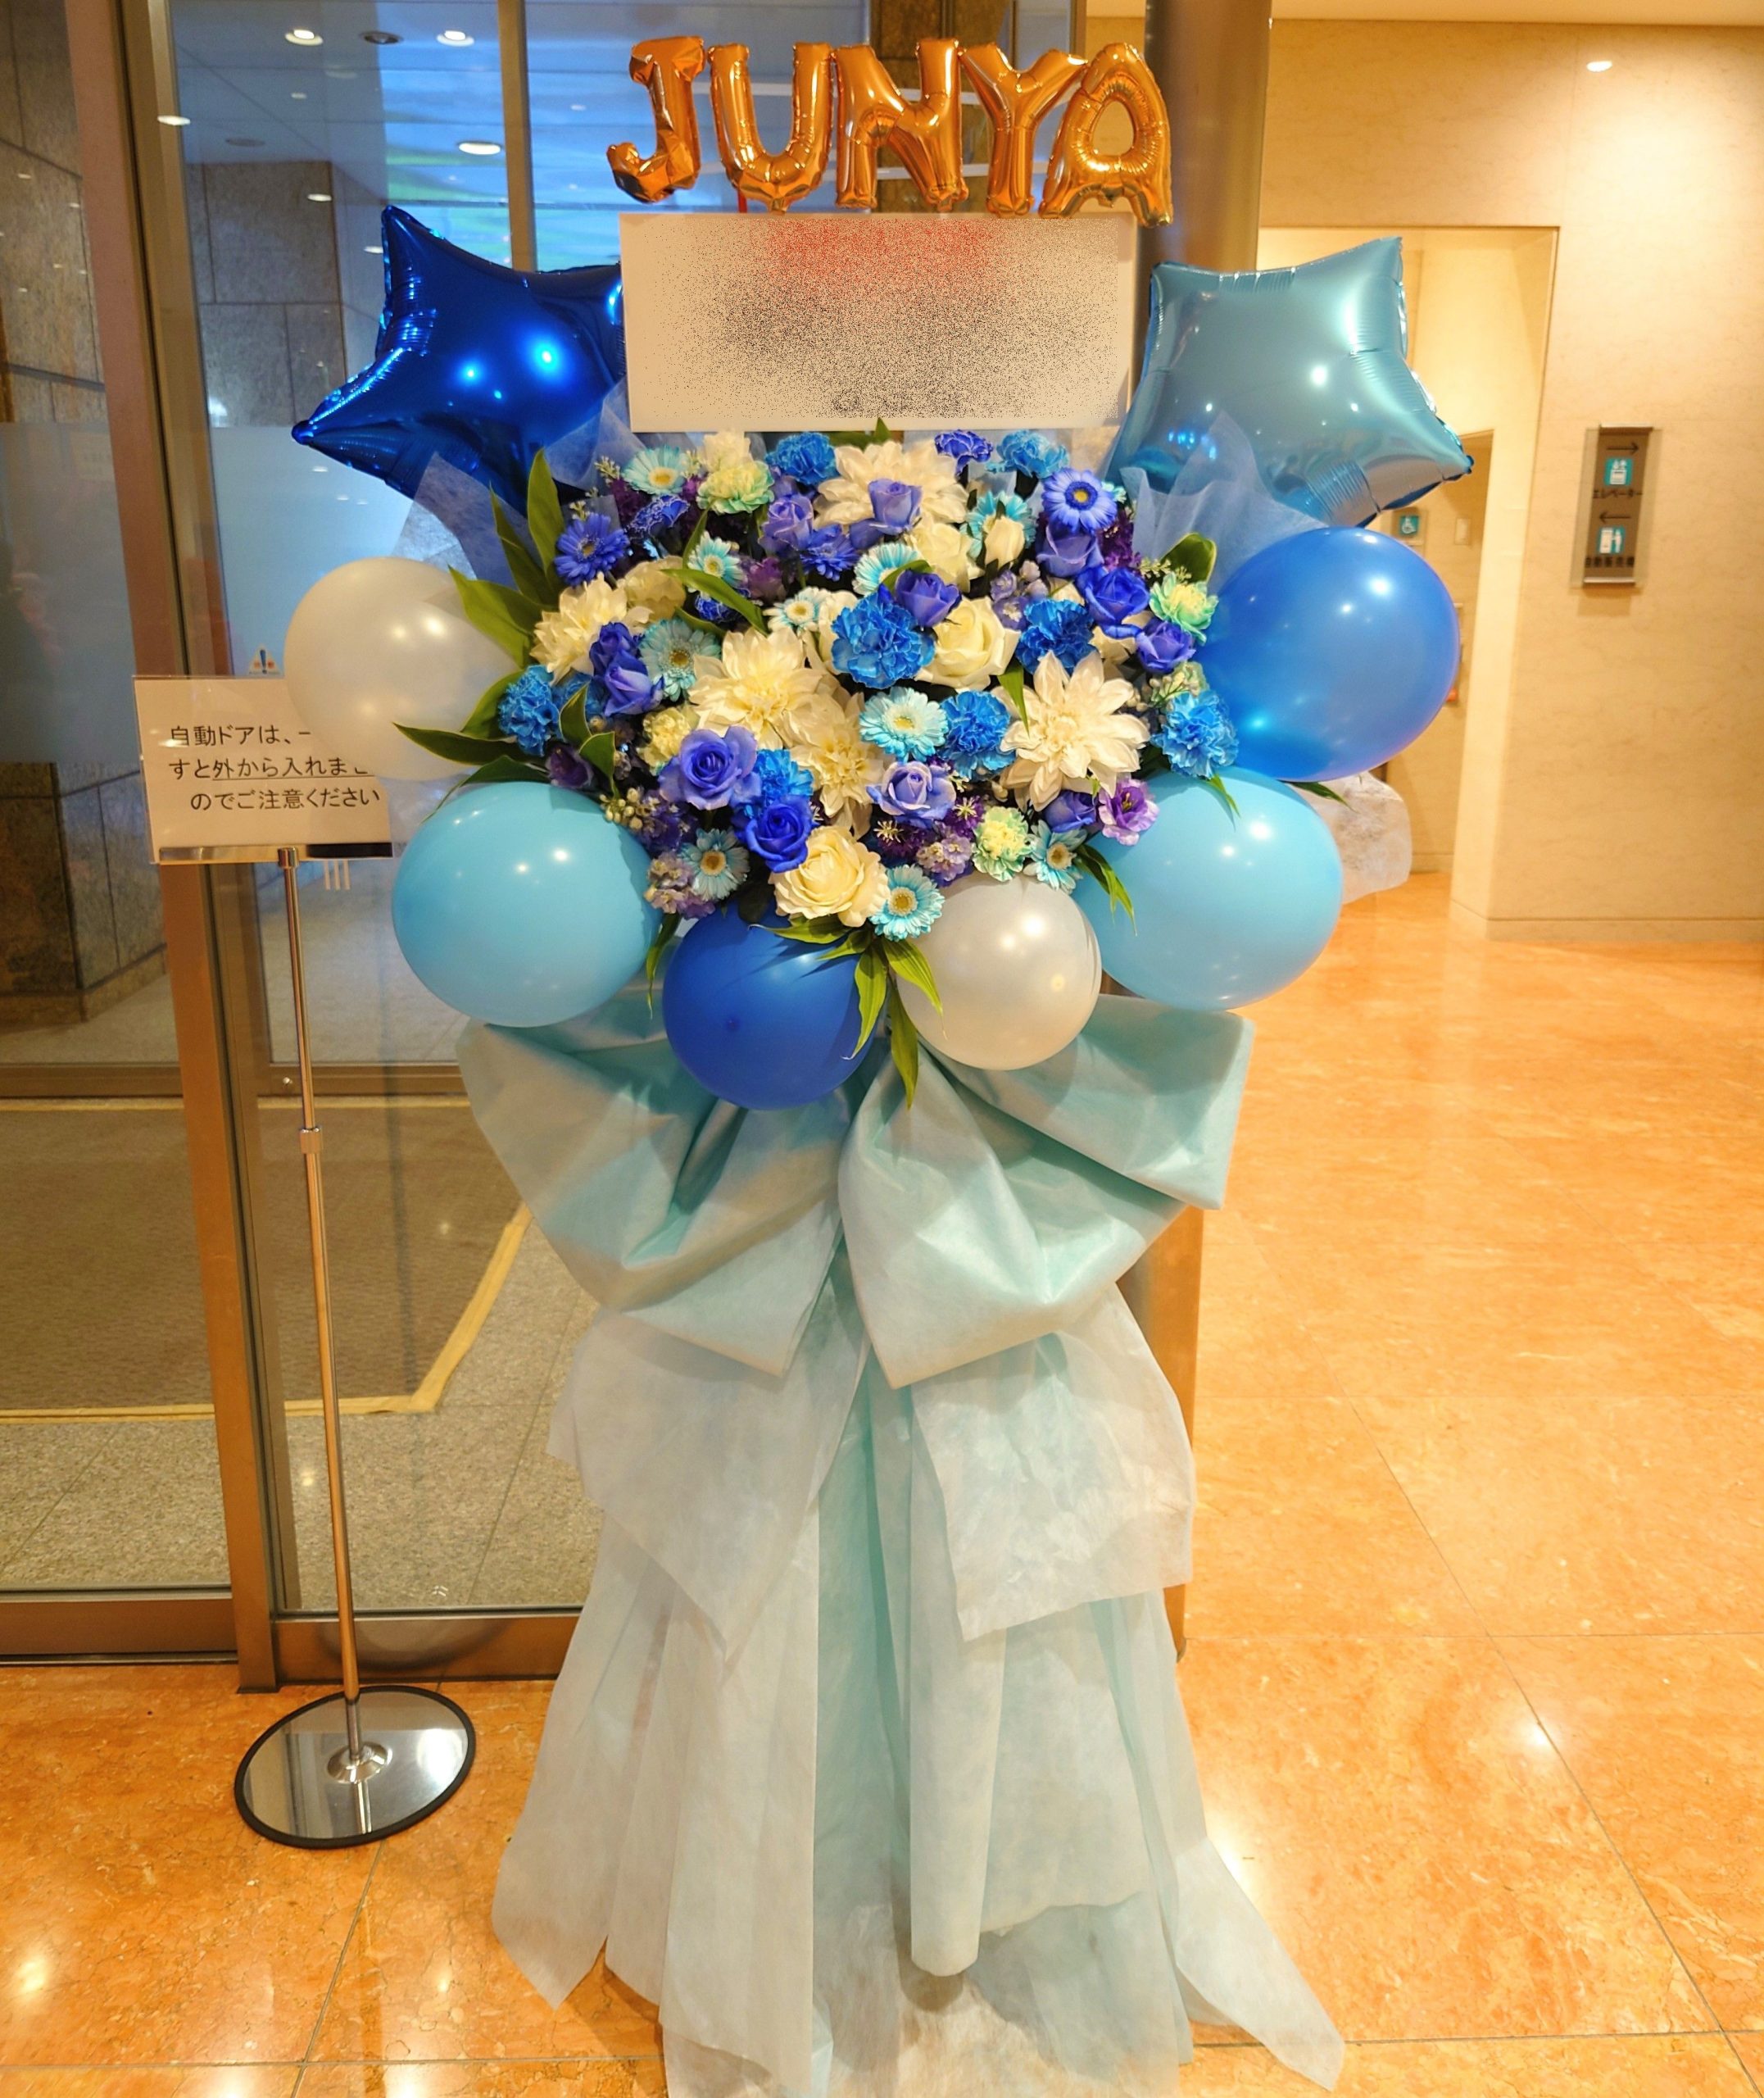 アルファベット名前入り青と白のバルーンフラスタを配達しました。【横浜花屋の花束・スタンド花・胡蝶蘭・バルーン・アレンジメント配達事例1062】